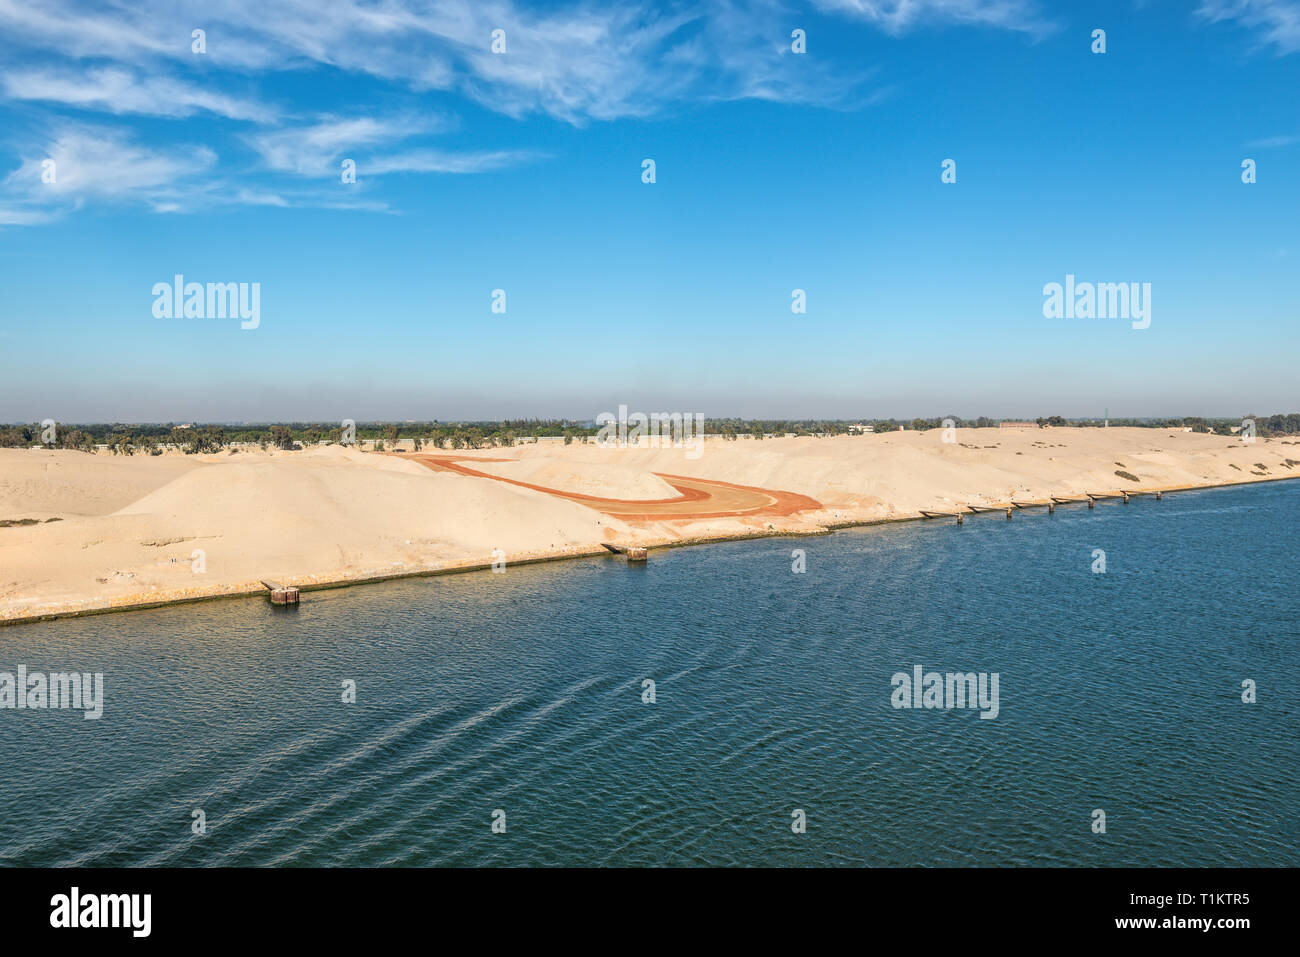 Il lato occidentale del Canale di Suez. Primo piano - Sito in costruzione. In background - ferrovia, edifici e palme. Vista dall'acqua, il canale di Suez Foto Stock